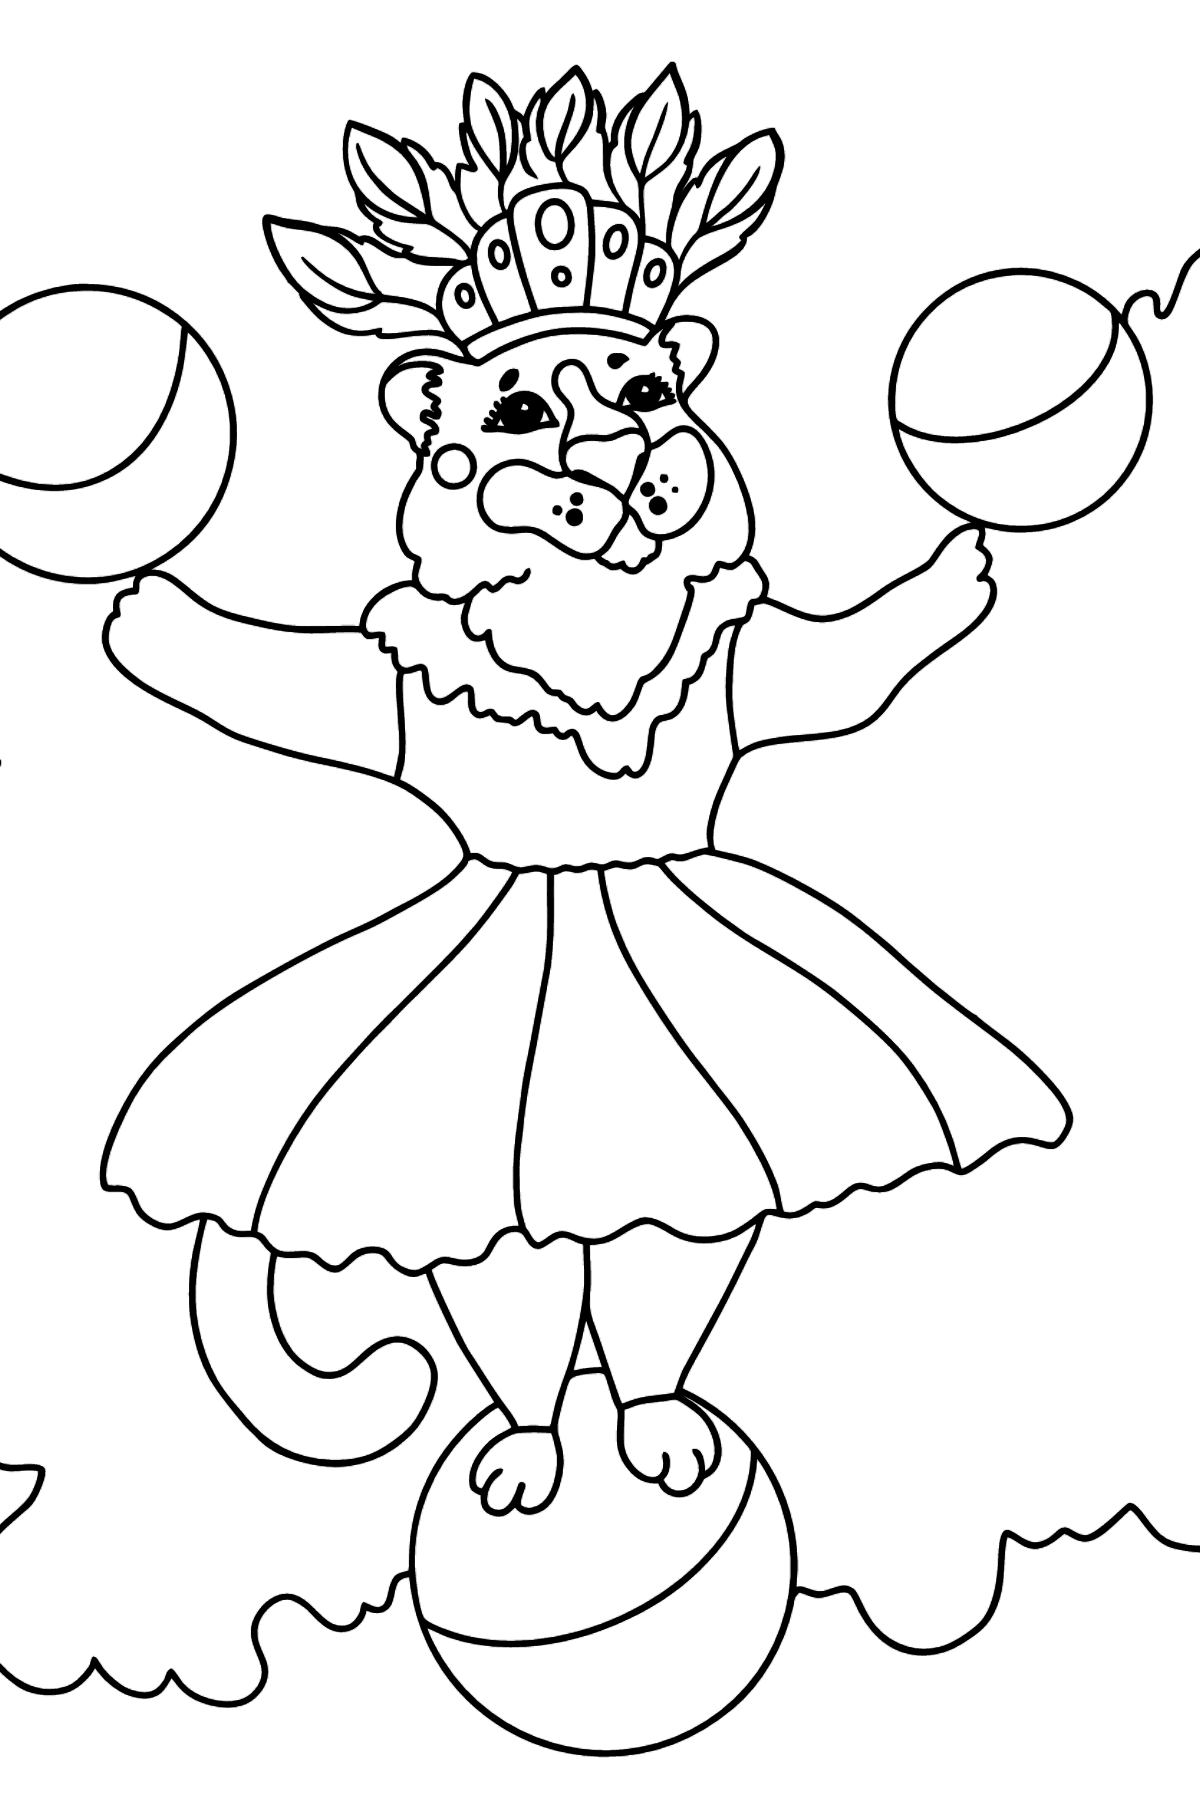 Tegning til fargelegging god tiger i sirkuset (vanskelig) - Tegninger til fargelegging for barn